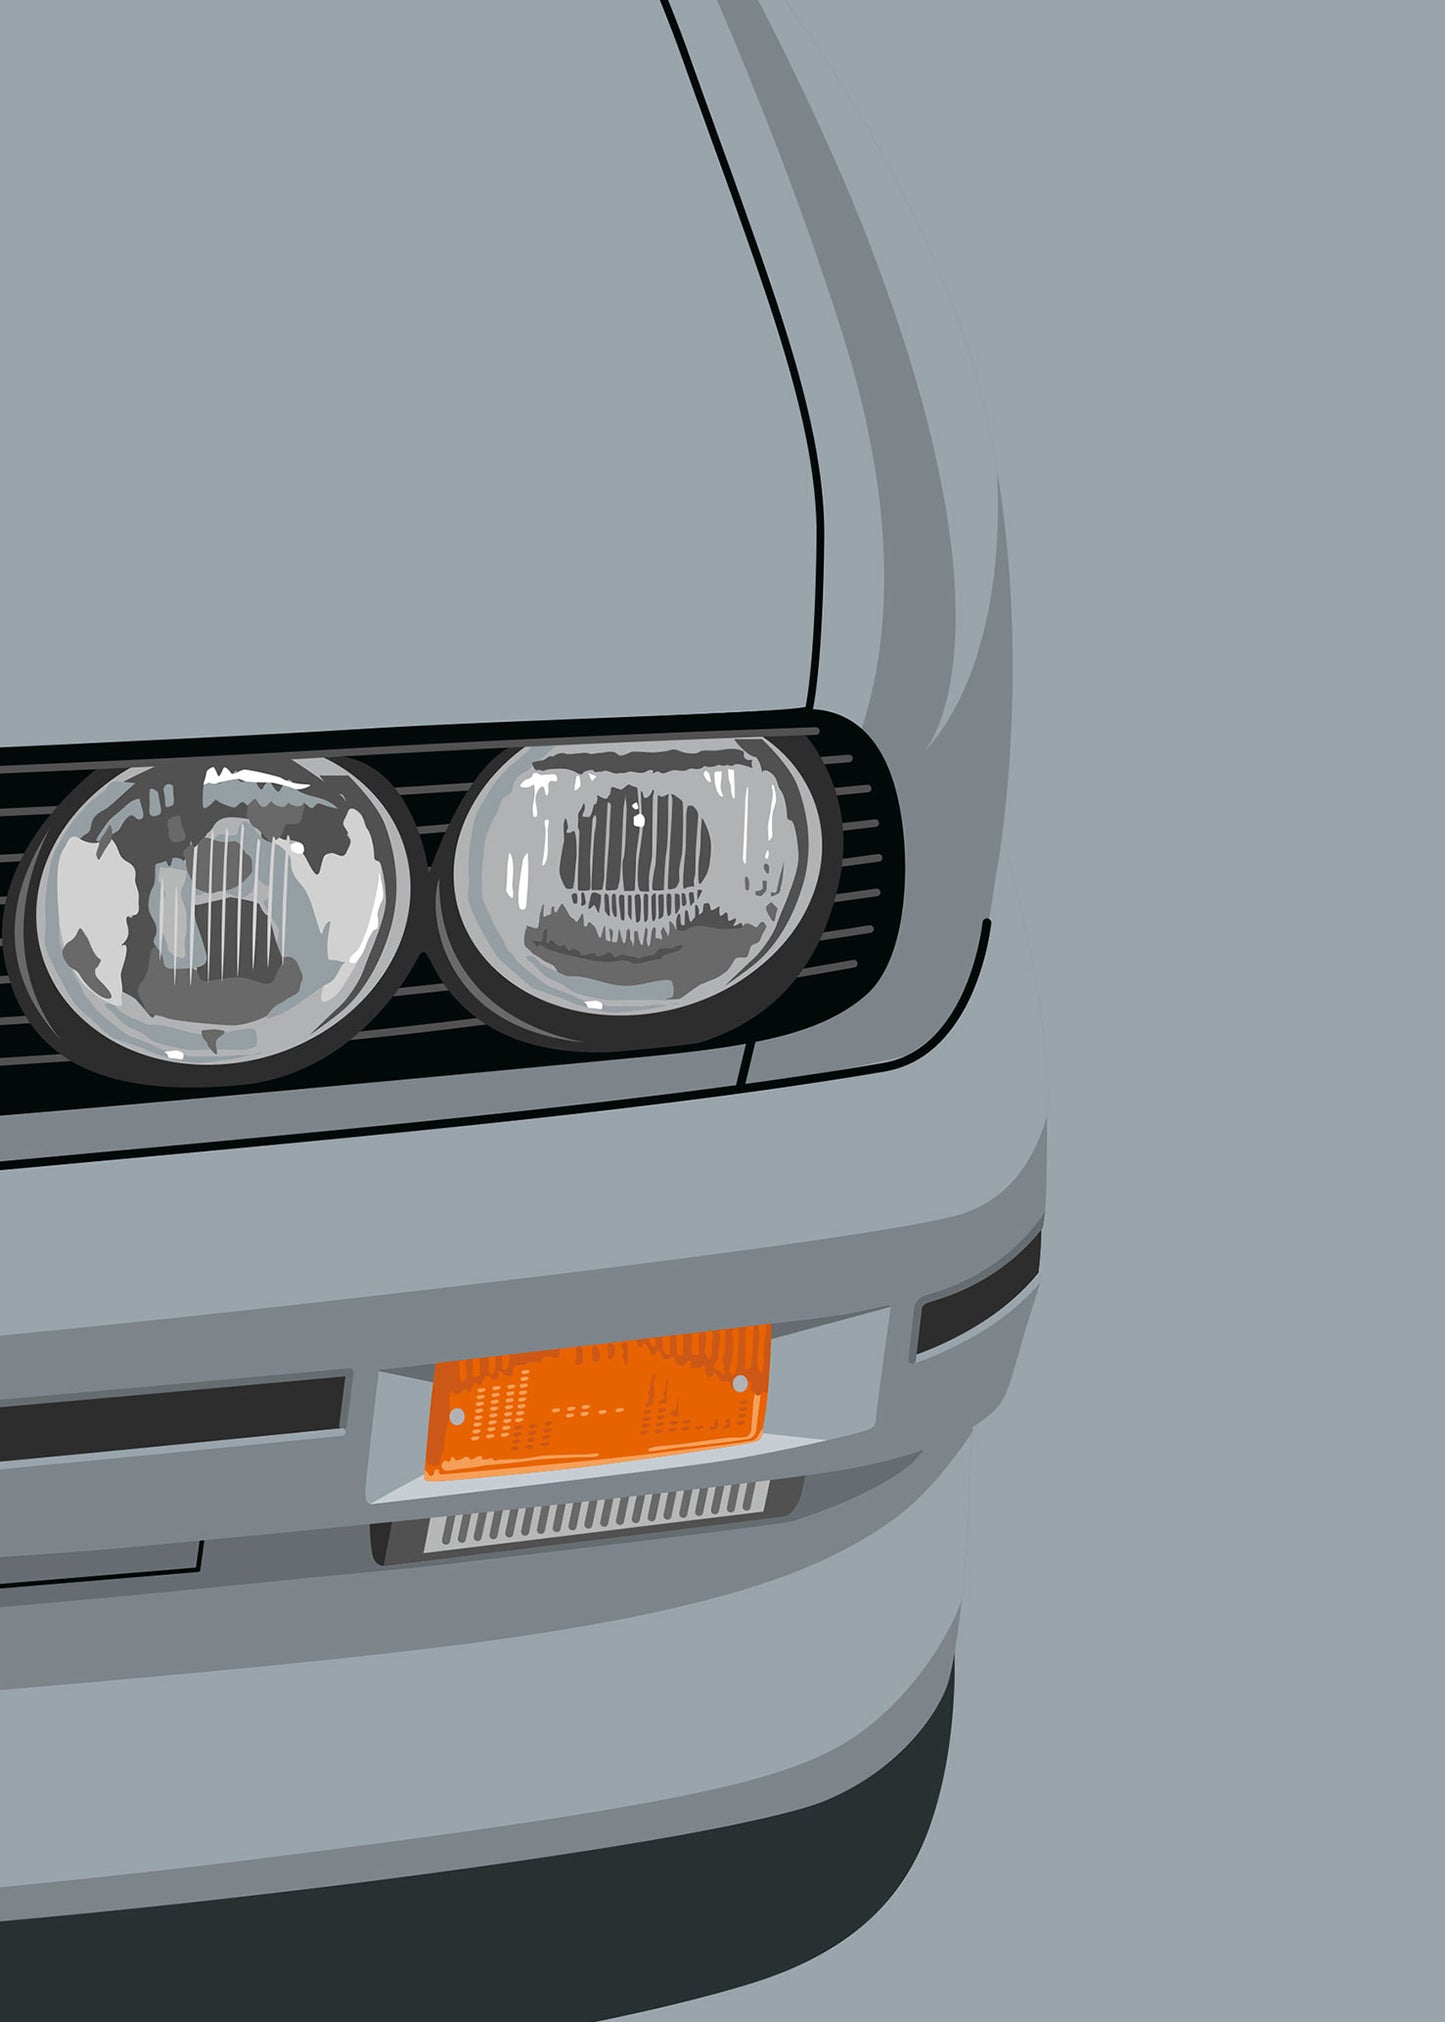 1990 BMW E30 M3 Salmon Silver 203 - poster print